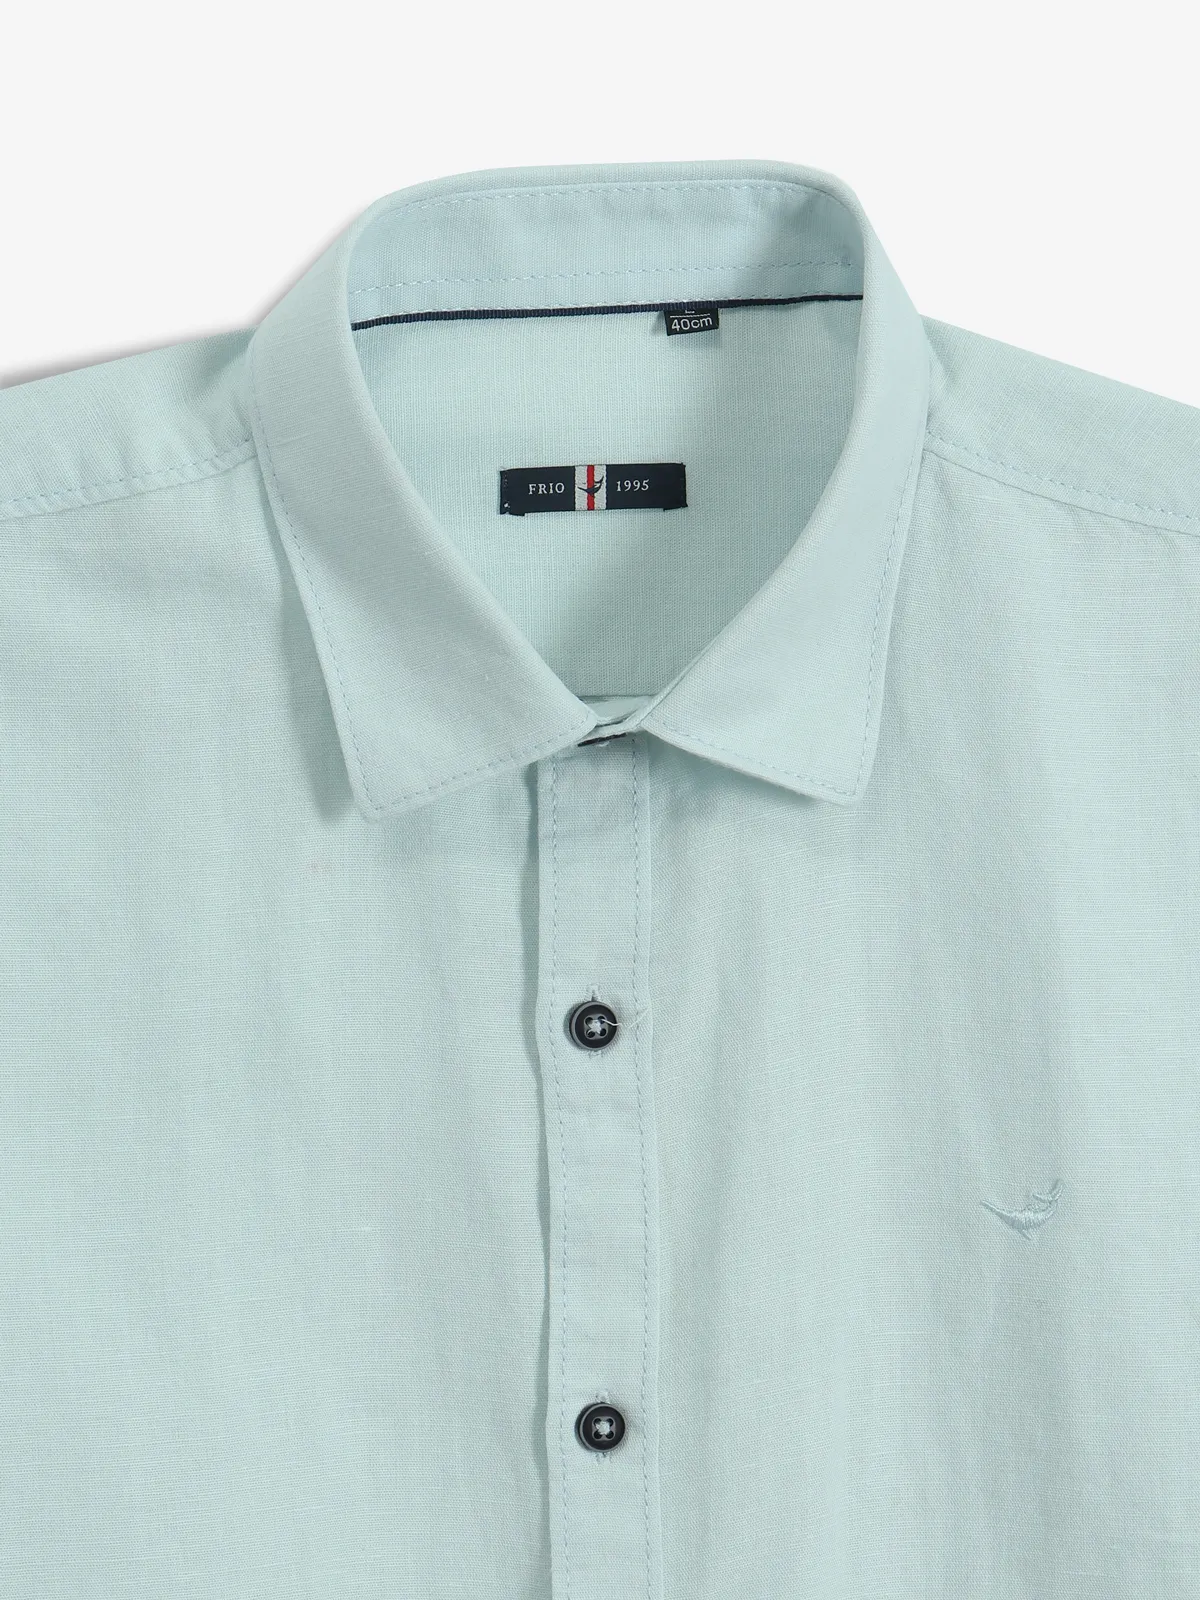 FRIO sky blue plain cotton shirt